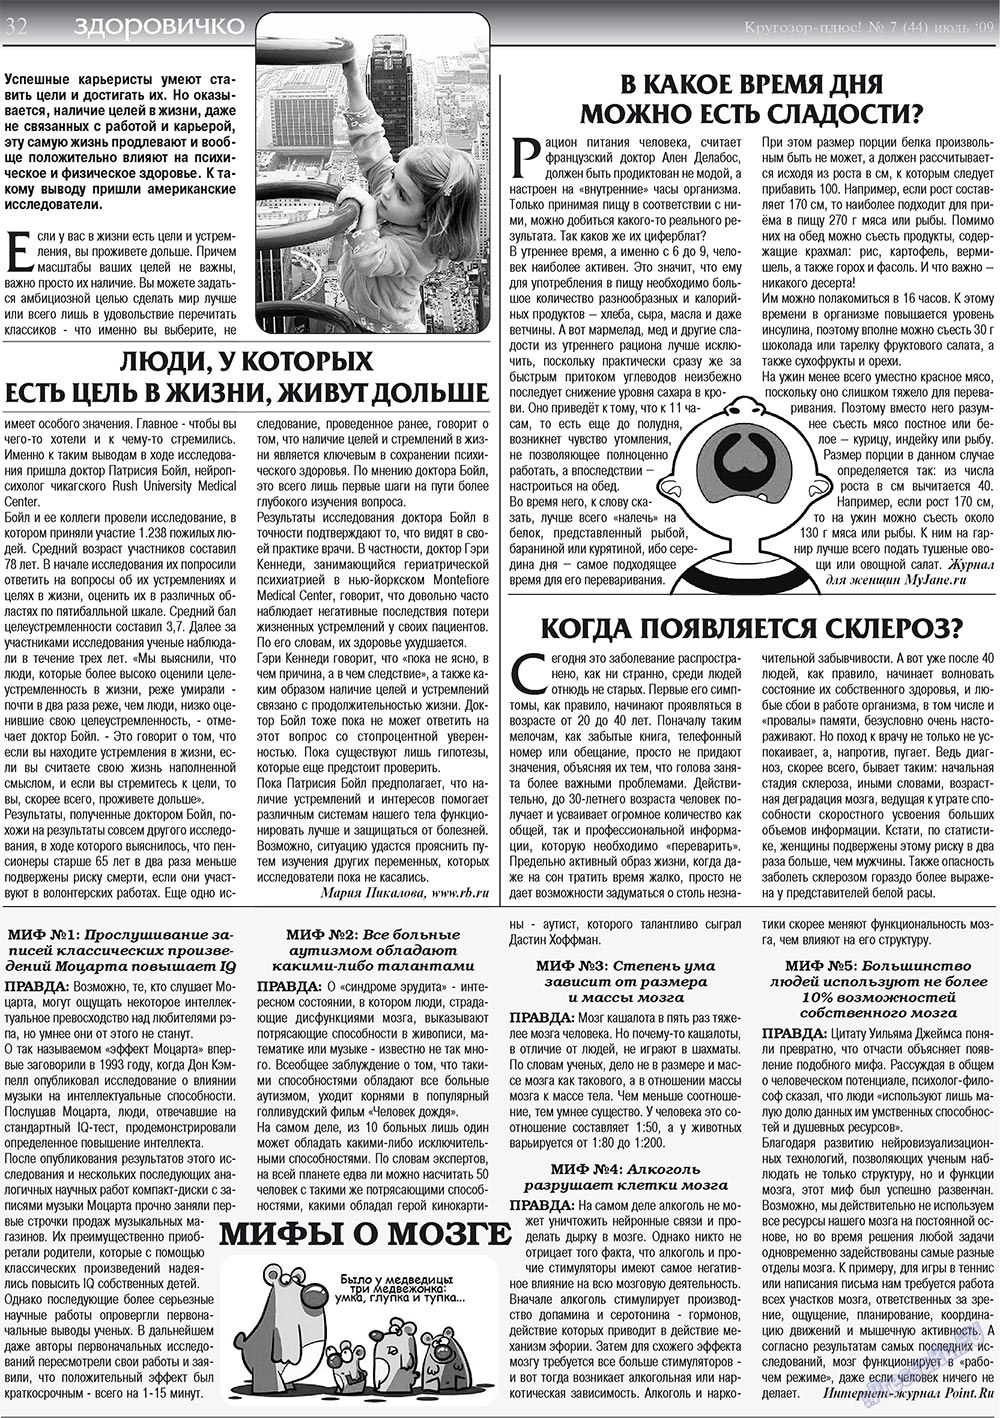 Кругозор плюс!, газета. 2009 №7 стр.32